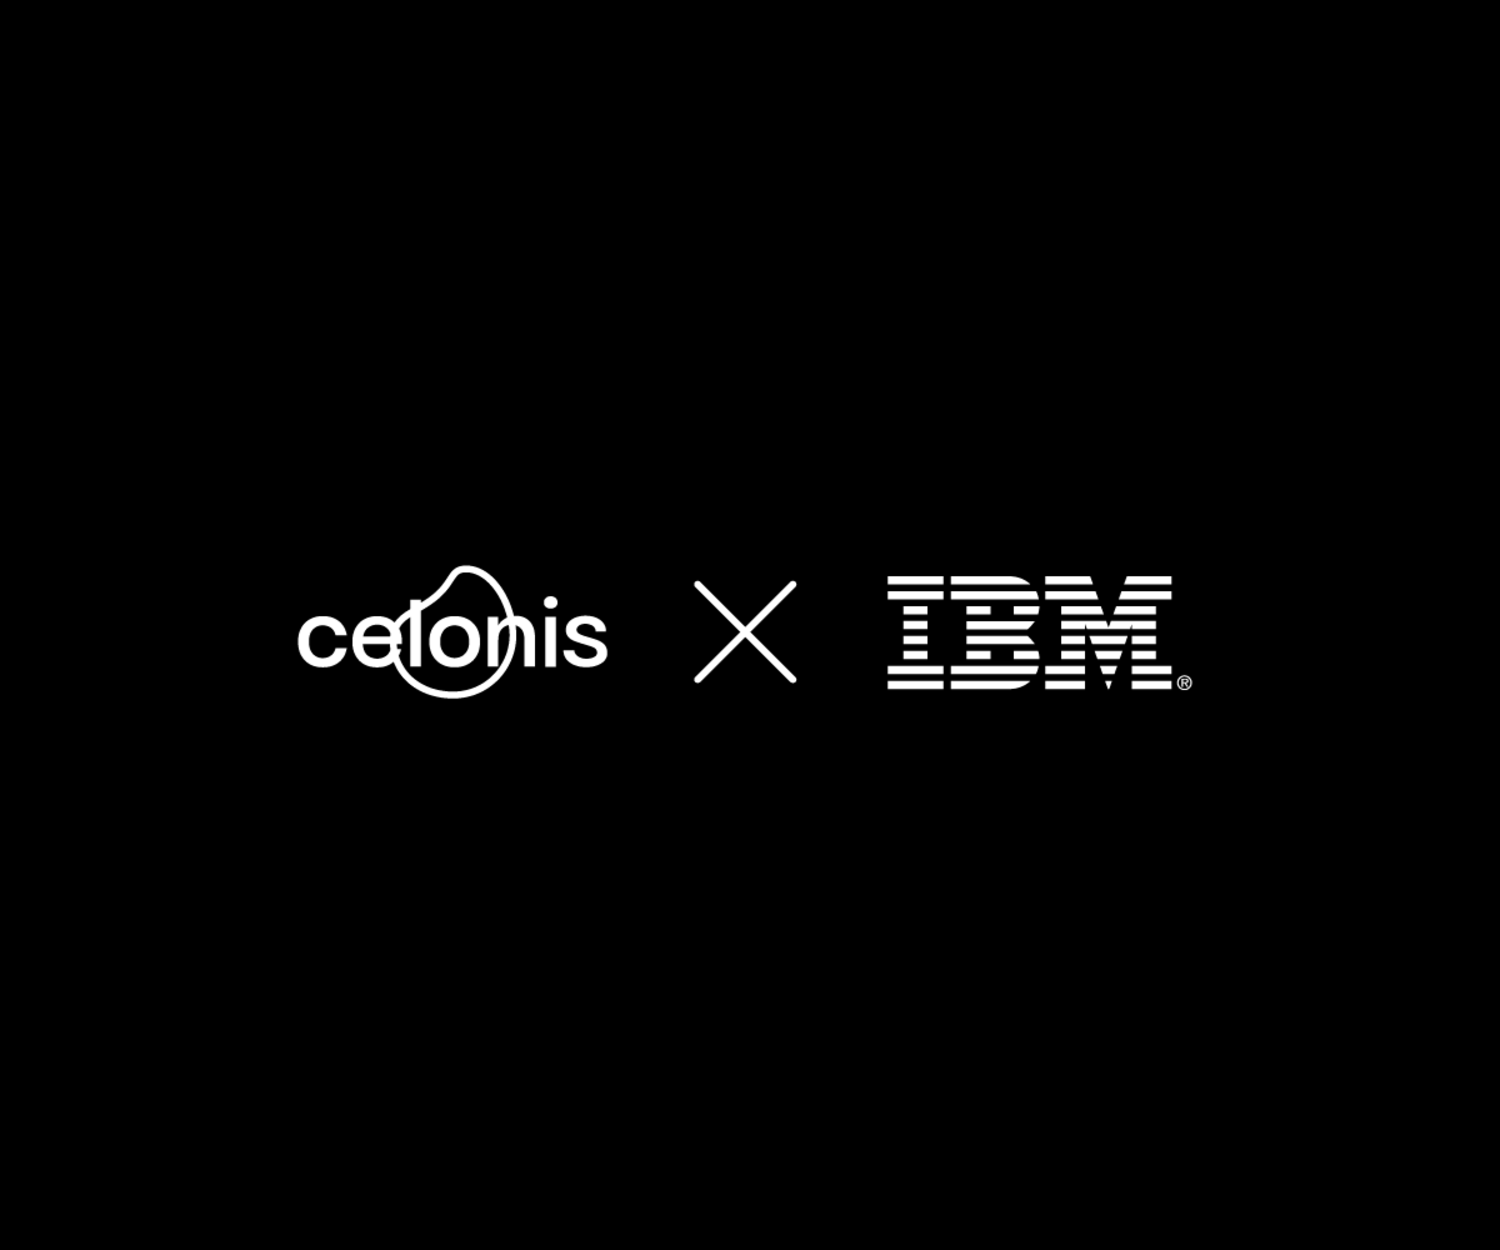 celonis & IBM logo in white on black background